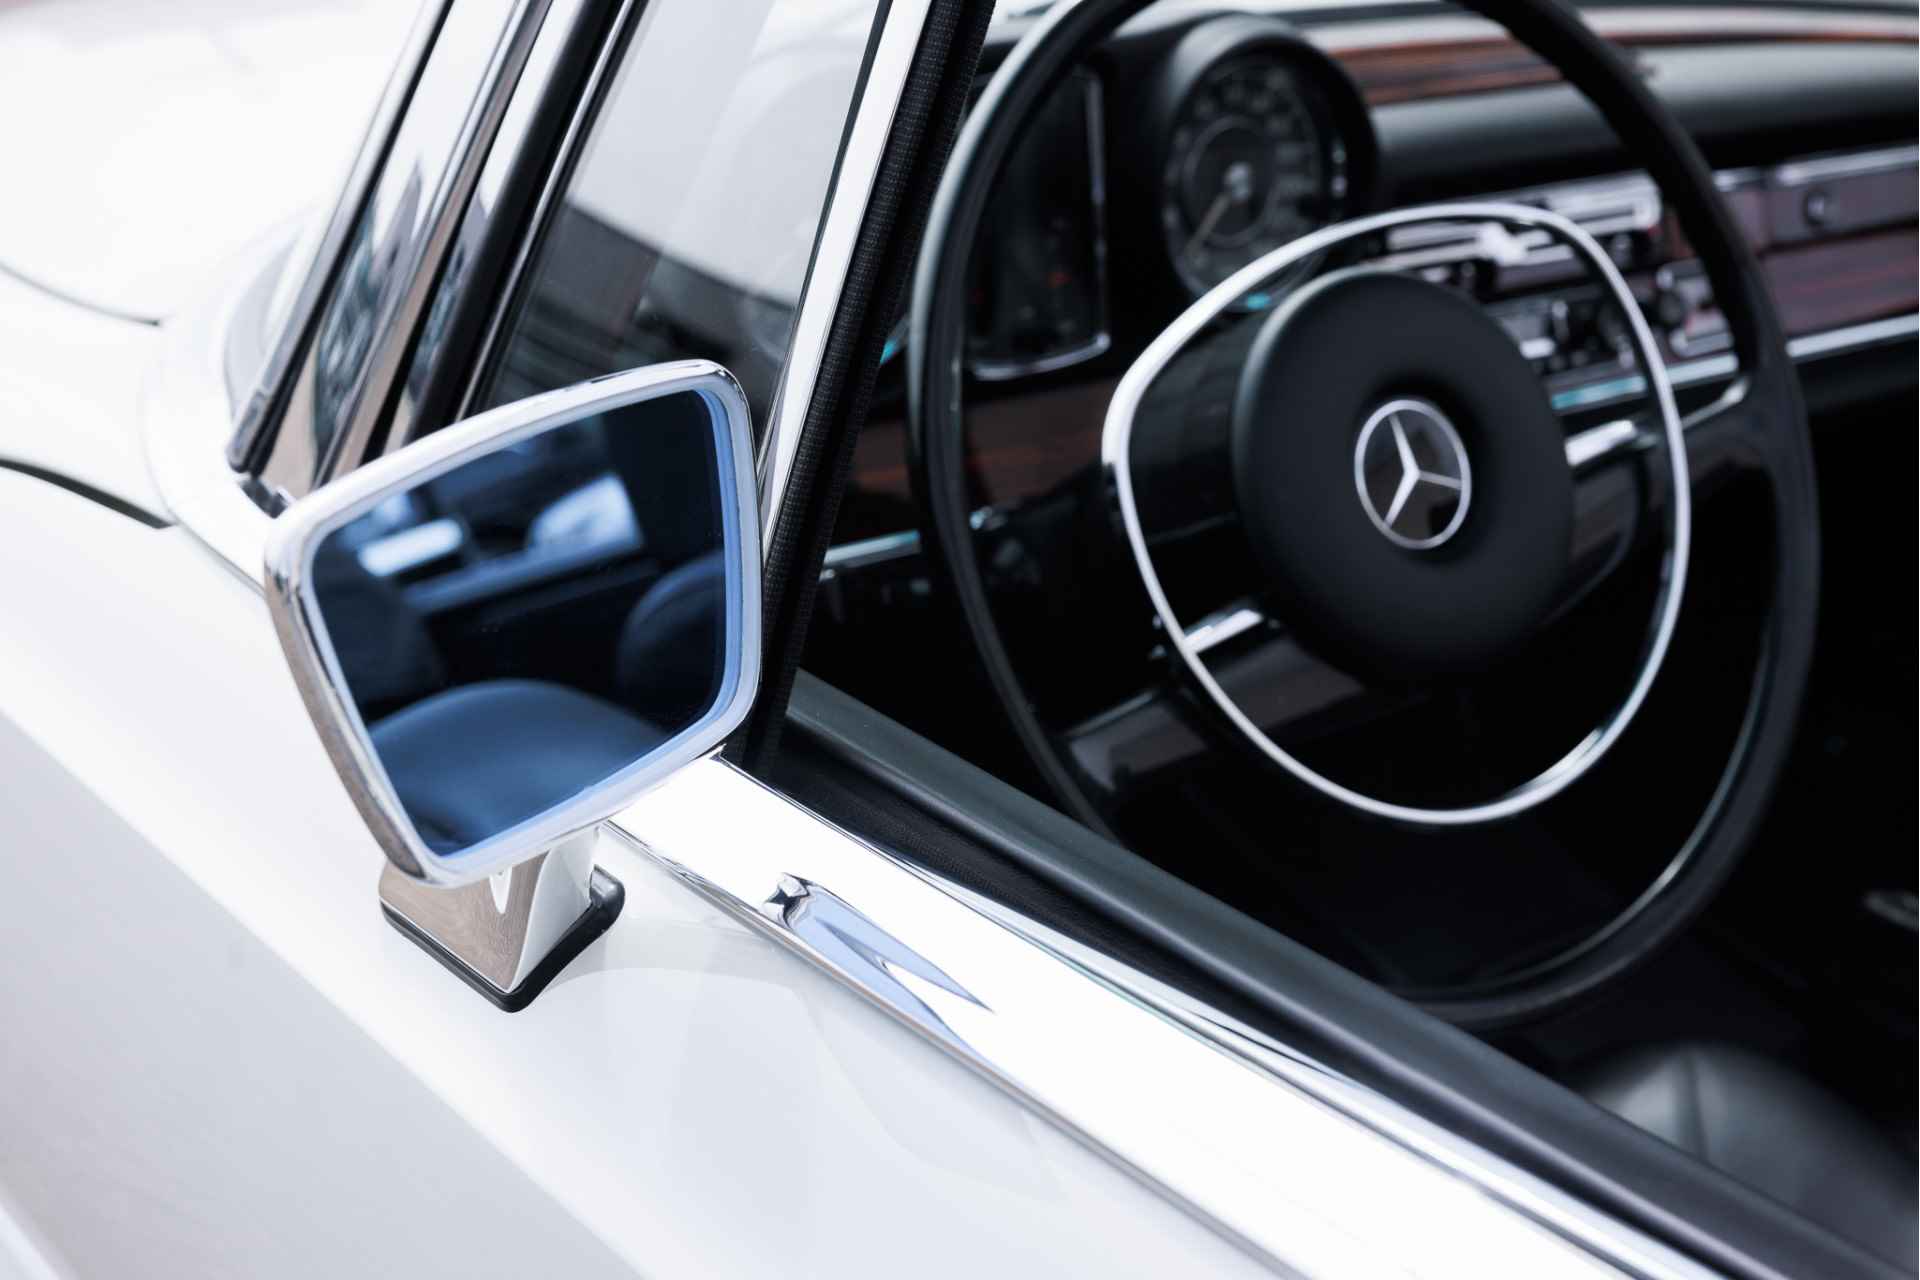 Mercedes-Benz W111 280 SE Cabriolet Volledig gerestaureerd  Verkoop in opdracht | Flachkühler | Compleet gerestaureerd - 16/31